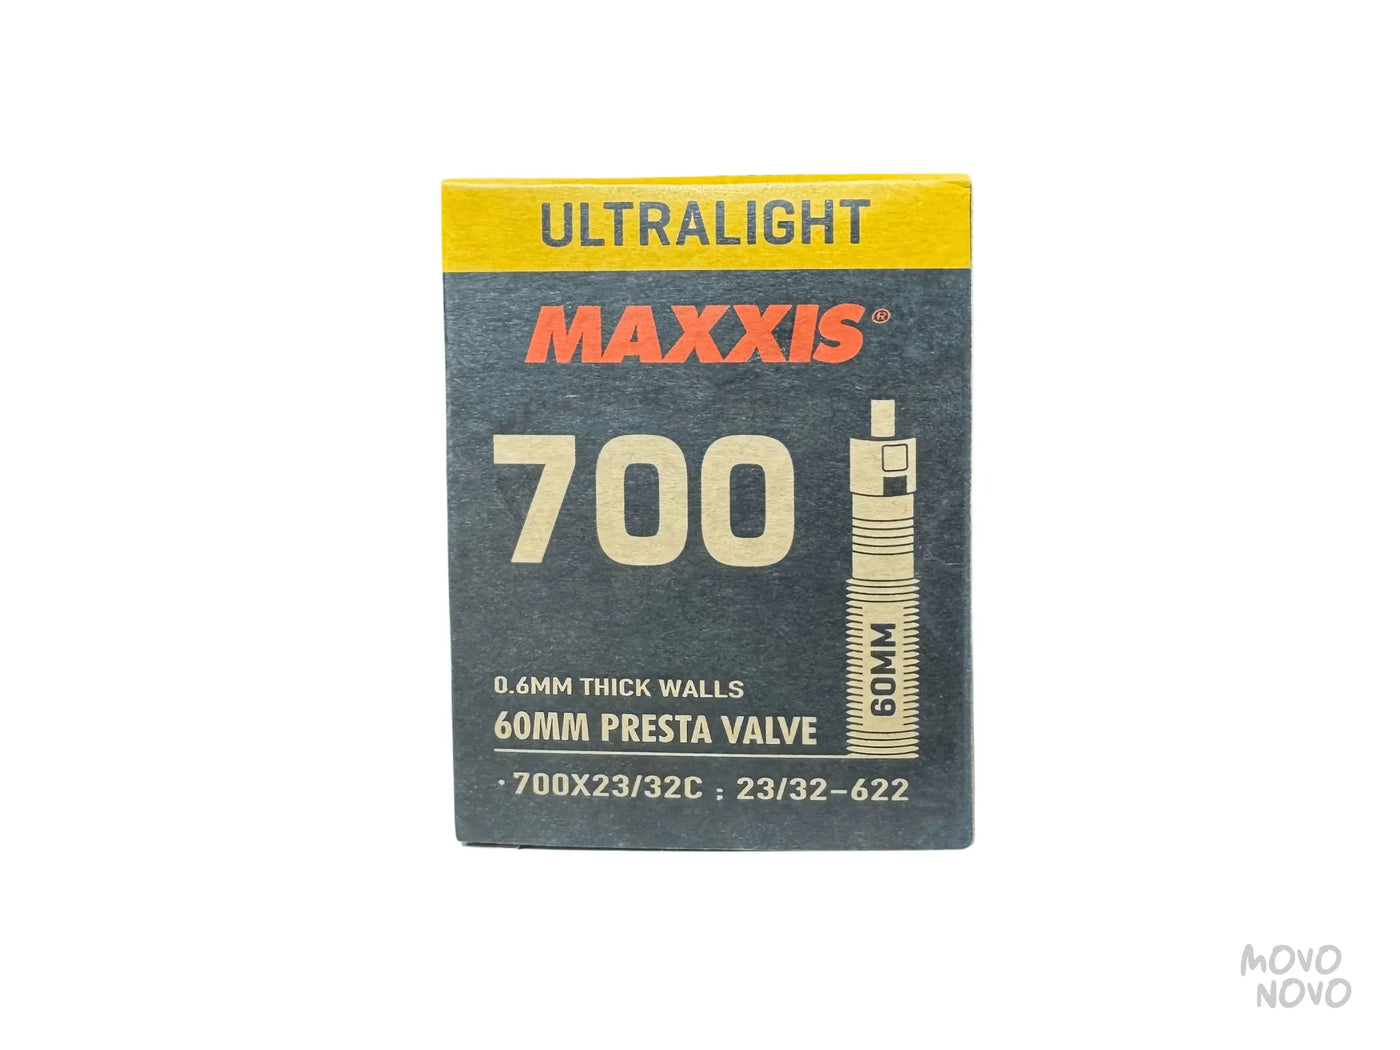 Camara Maxxis Ultralight 700x23/32 60mm